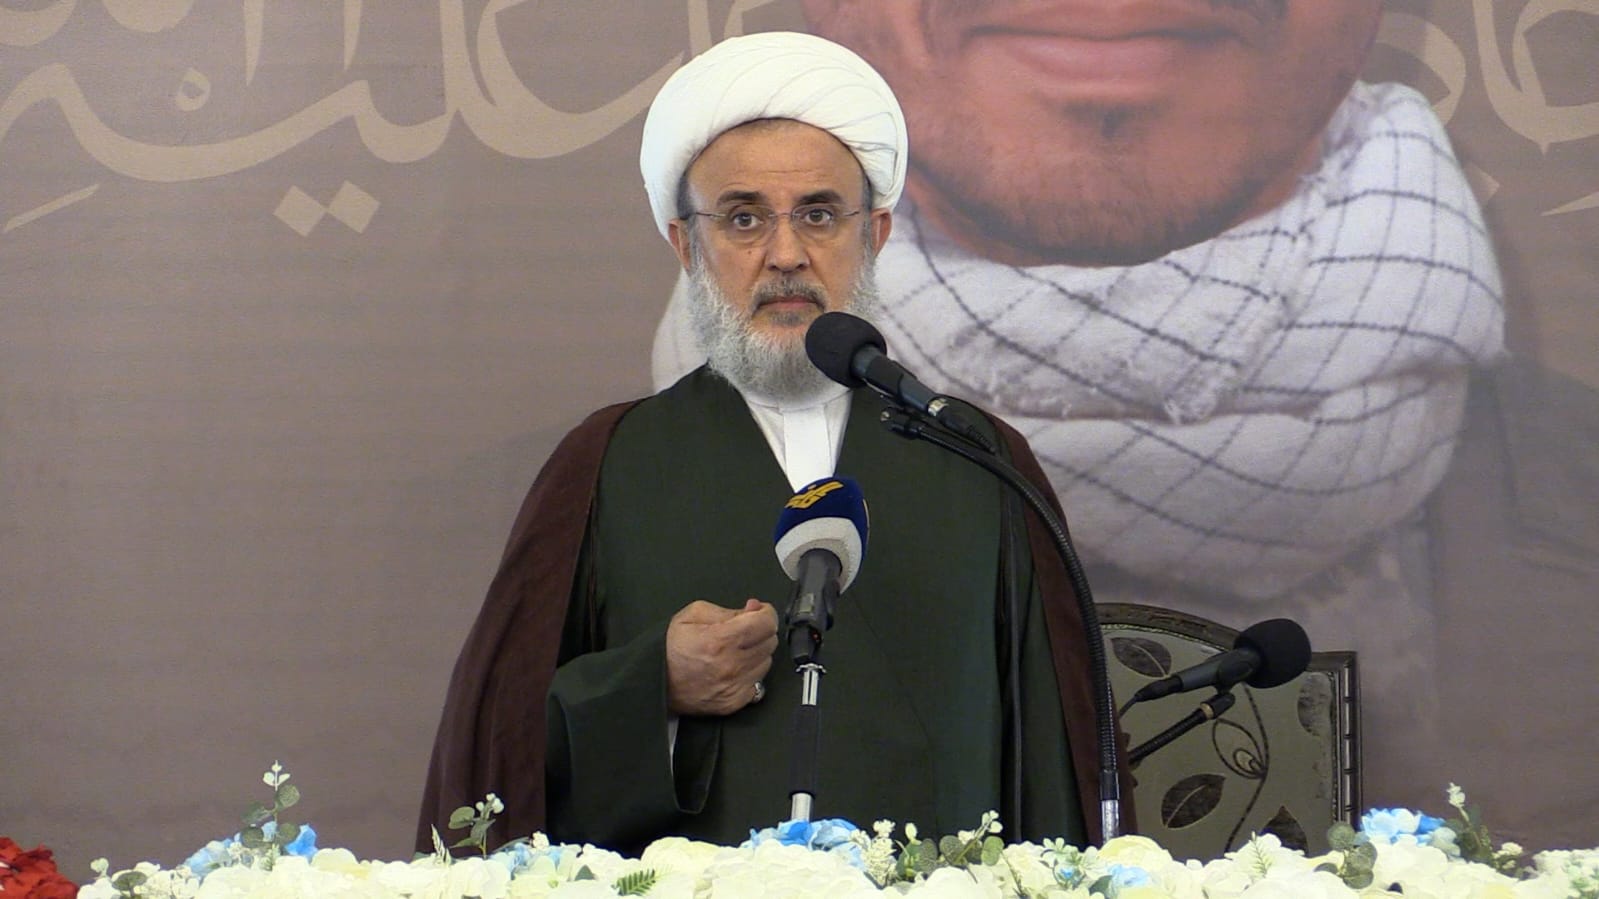 حزب الله : ”الردّ الإيراني الجريء يعني أن إيران لا تخشى الحرب الواسعة في المنطقة "